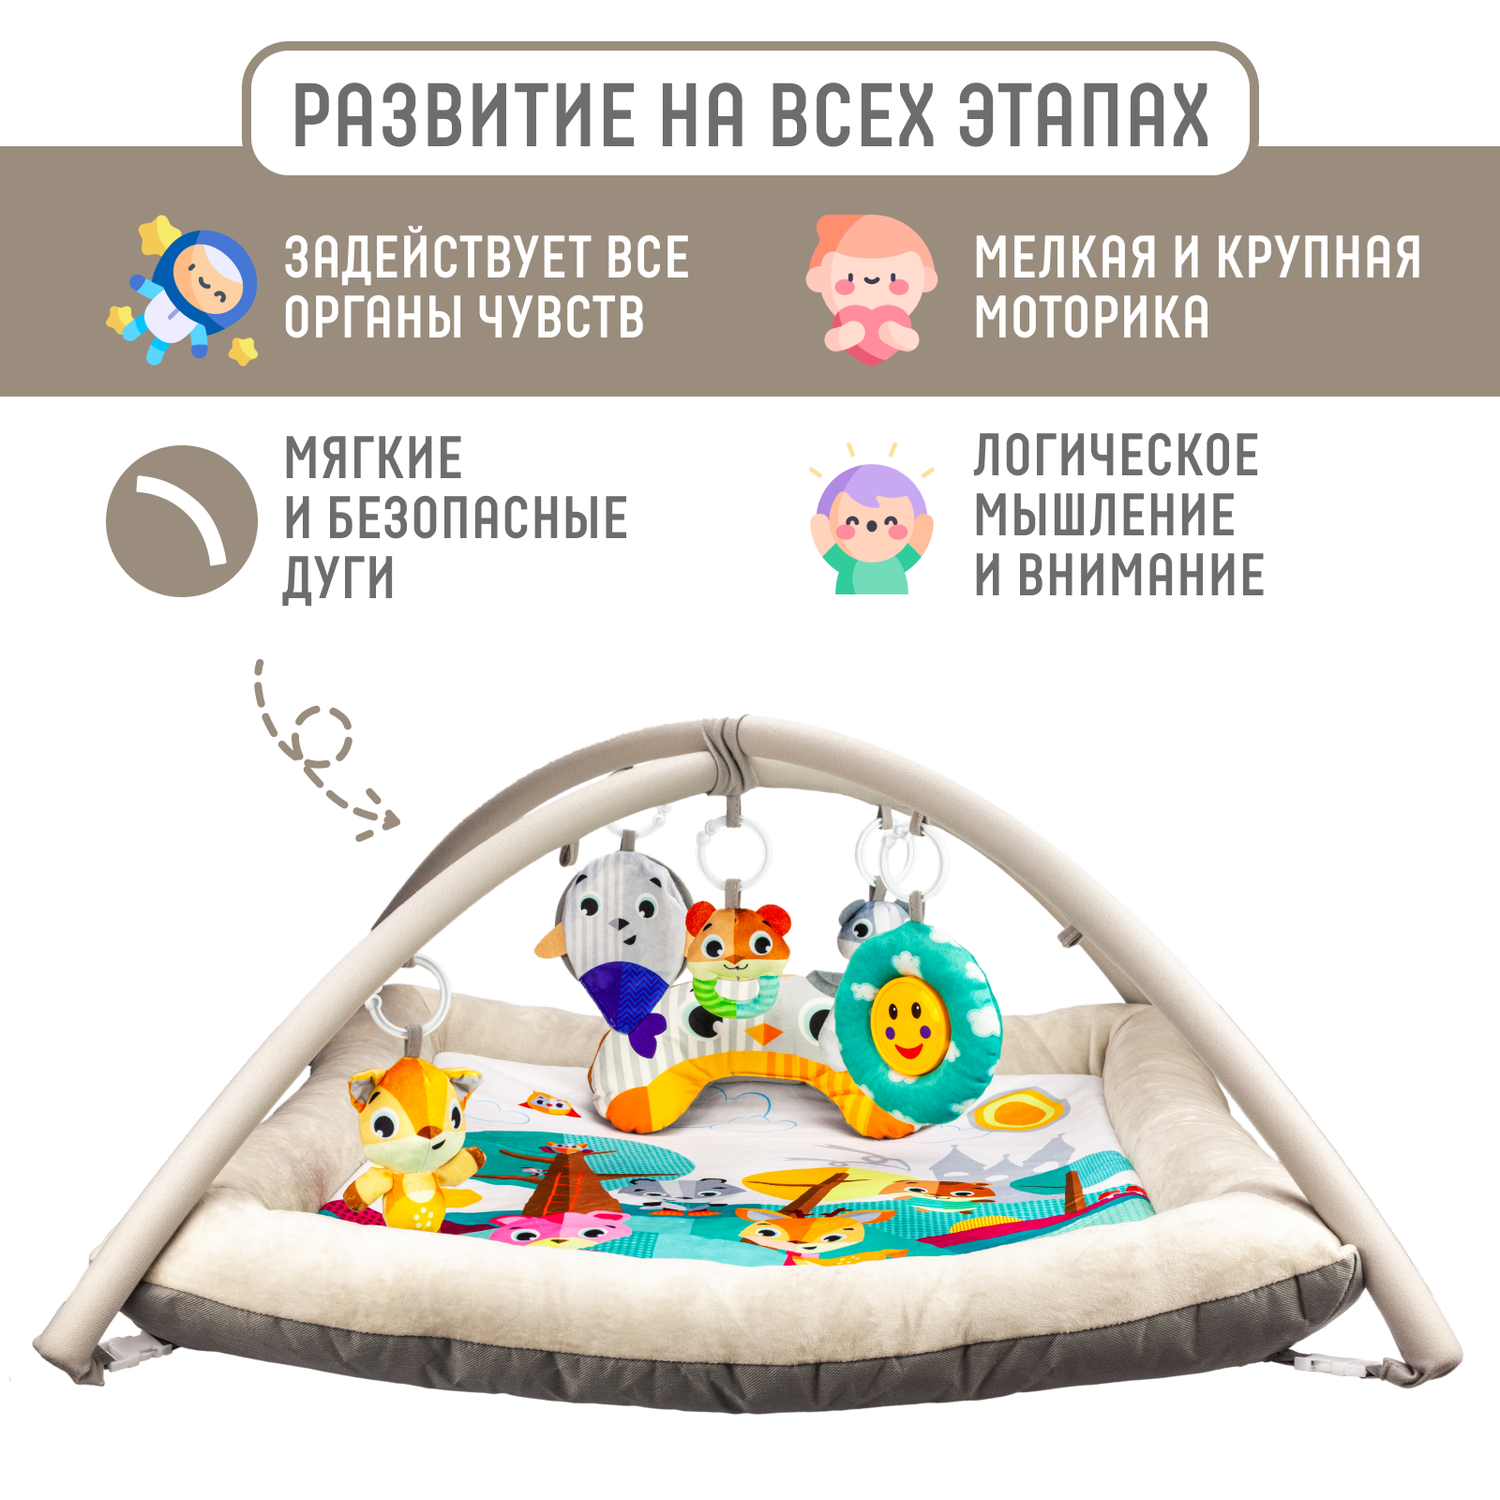 Развивающий игровой коврик Solmax для новорожденных с дугой и игрушками бежевый/голубой - фото 2